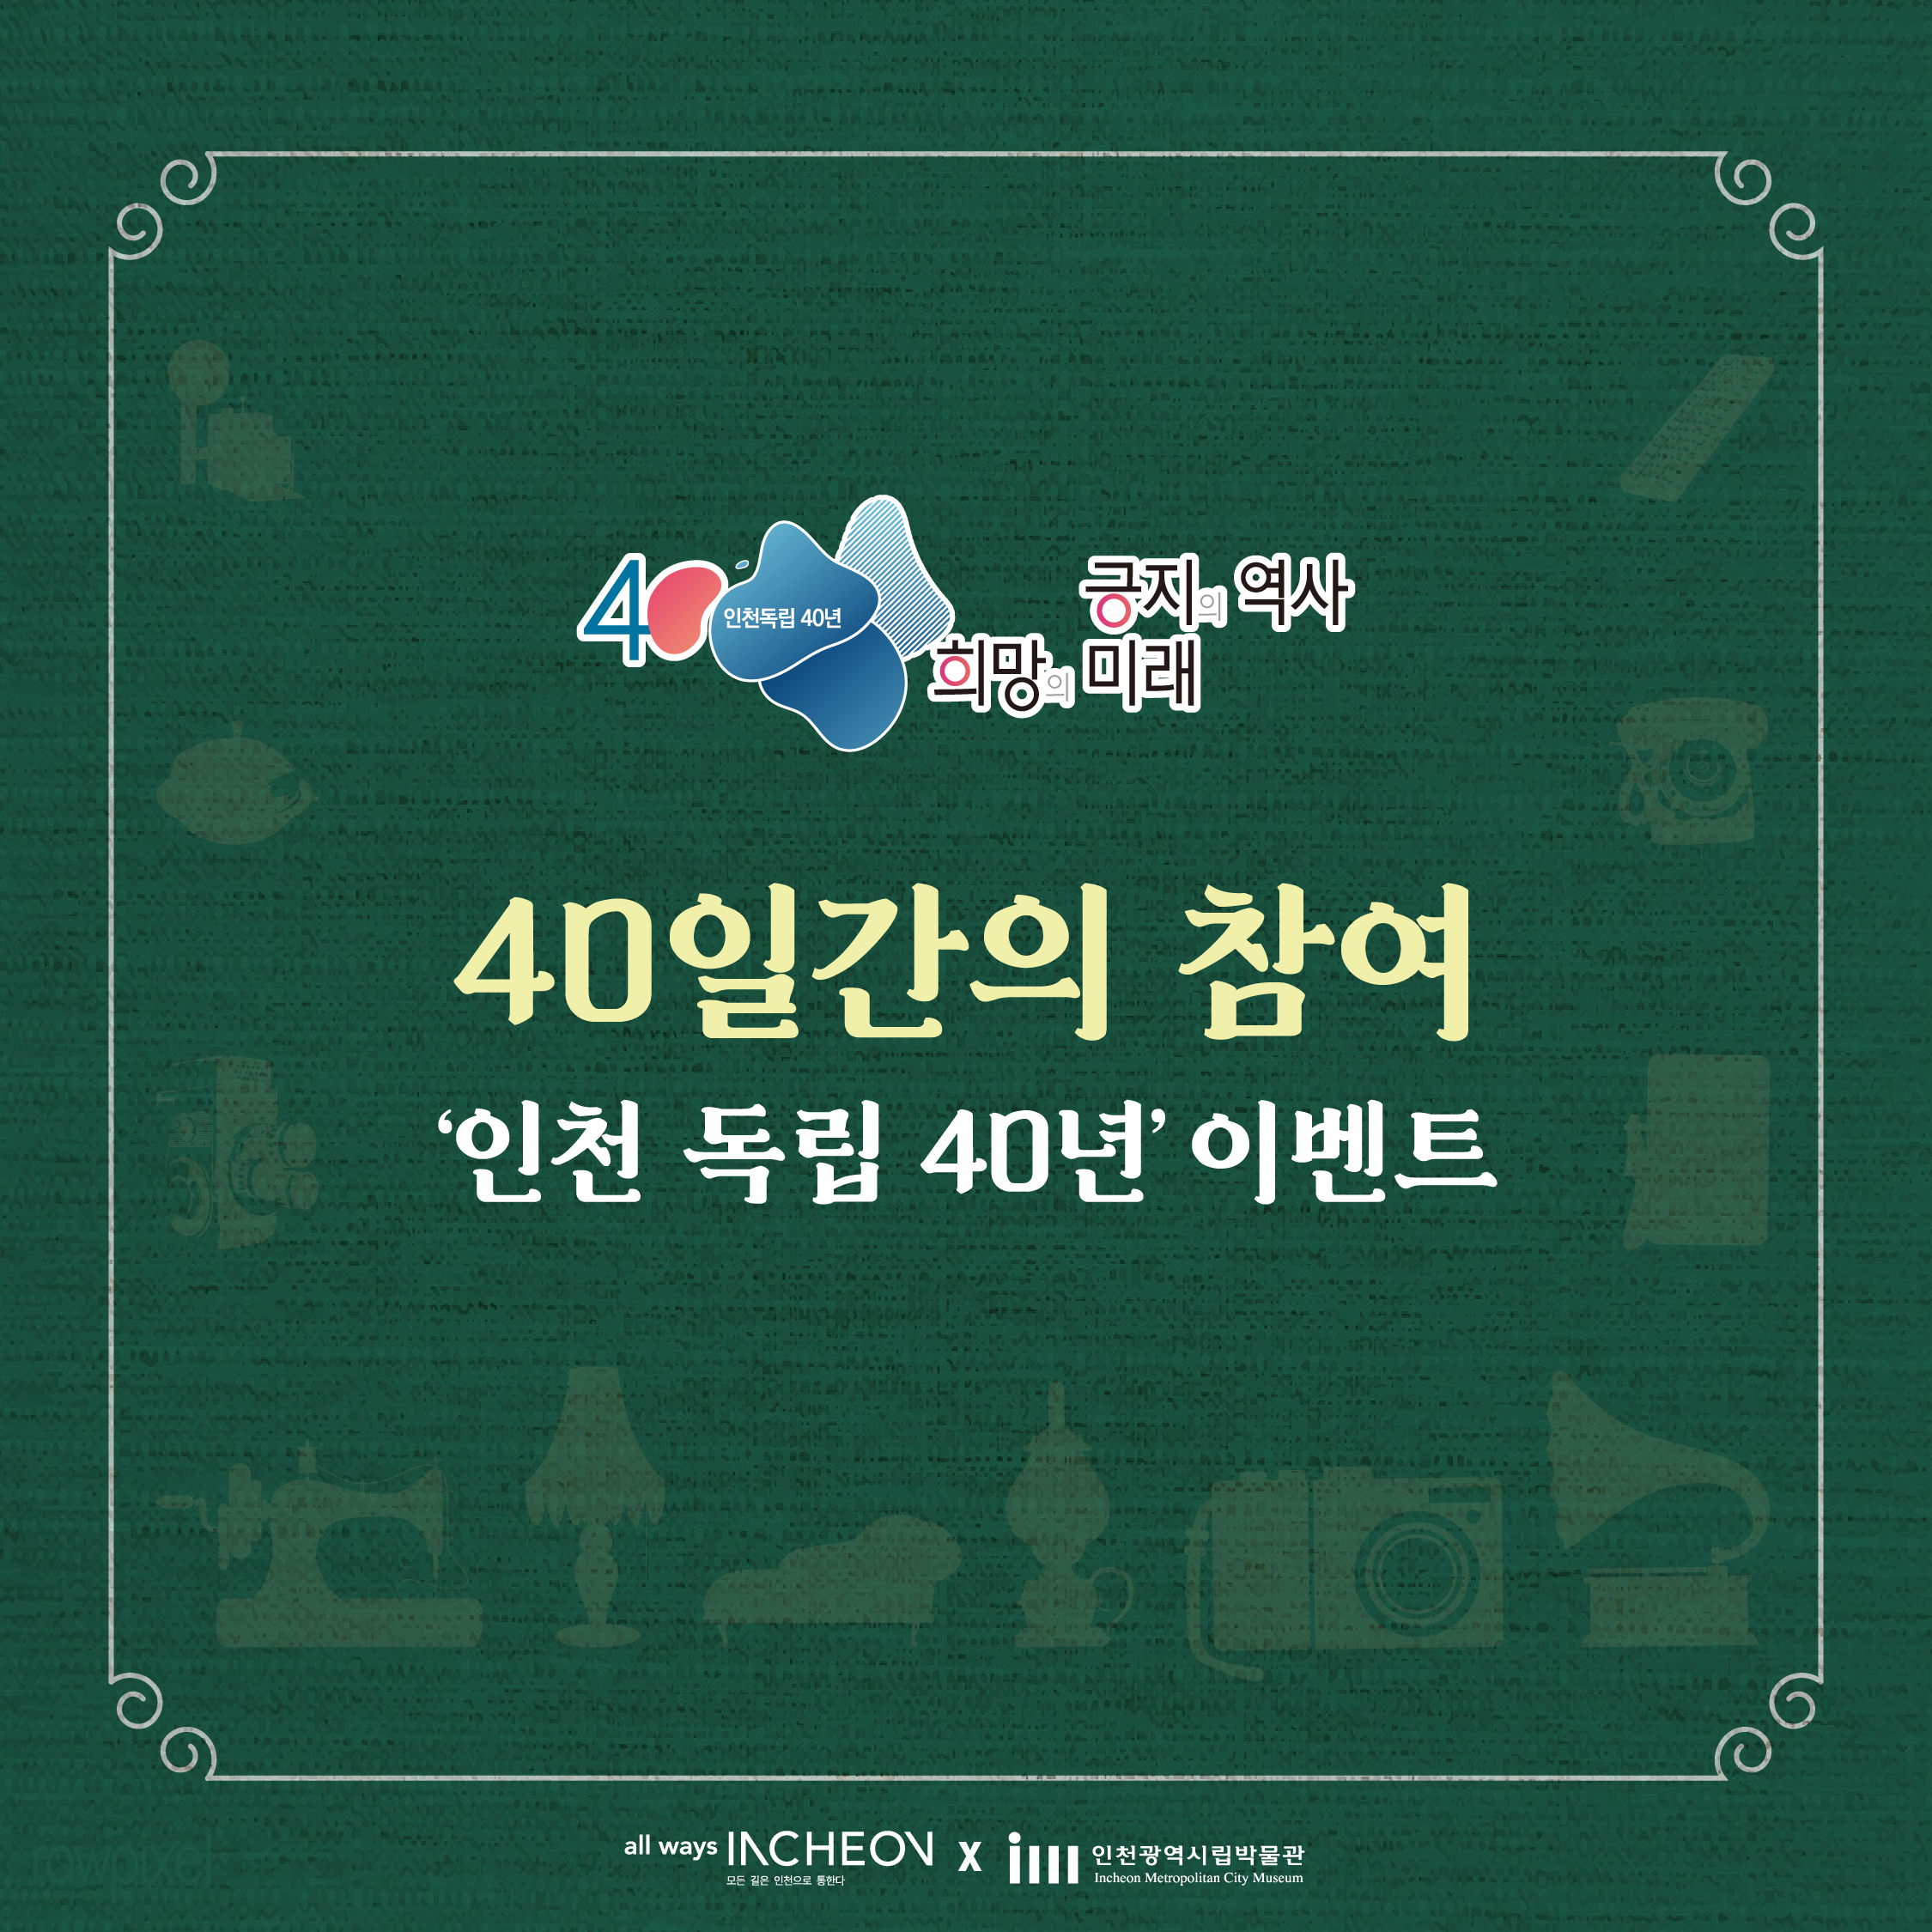 긍지의 역사 희망의 미래
40일간의 참여 인천 독립 40년 이벤트